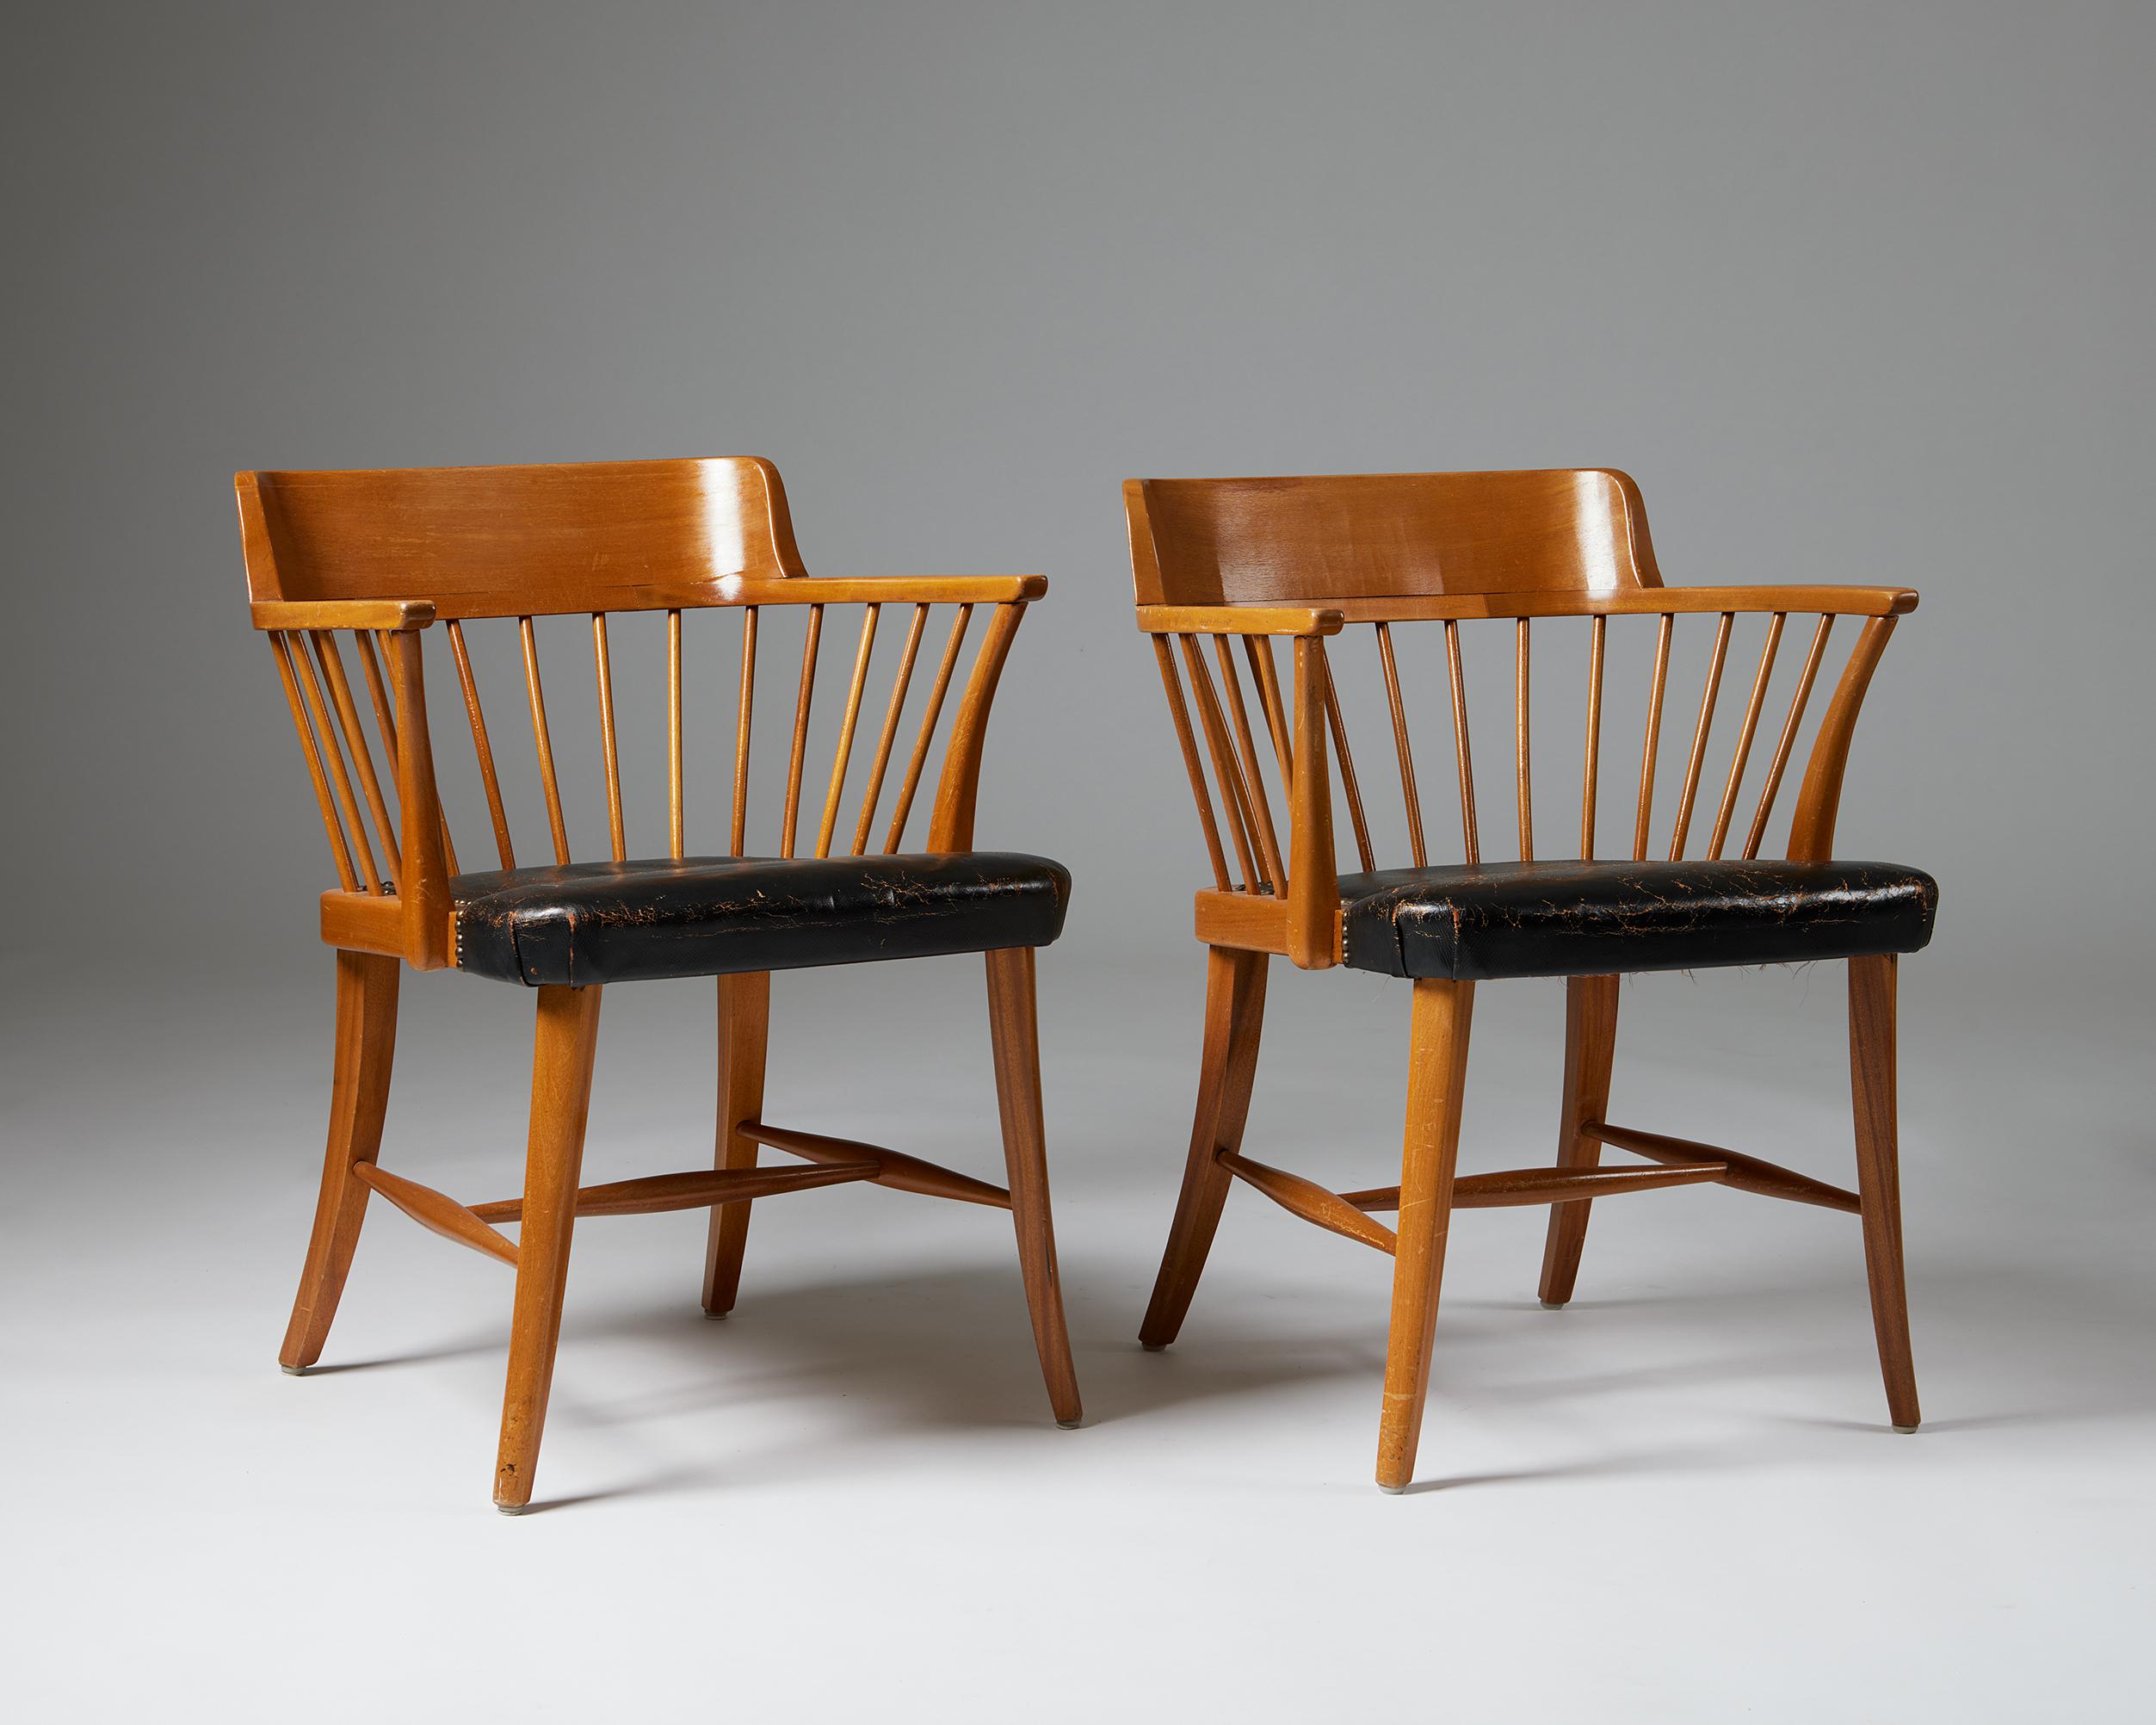 Paar Sessel Modell 789B 'Captain's Chair', entworfen von Josef Frank für Svenskt Tenn,
Schweden. 1930s.
Mahagoni, Leder und Messing.

Maße: H: 76,5 cm / 2' 6